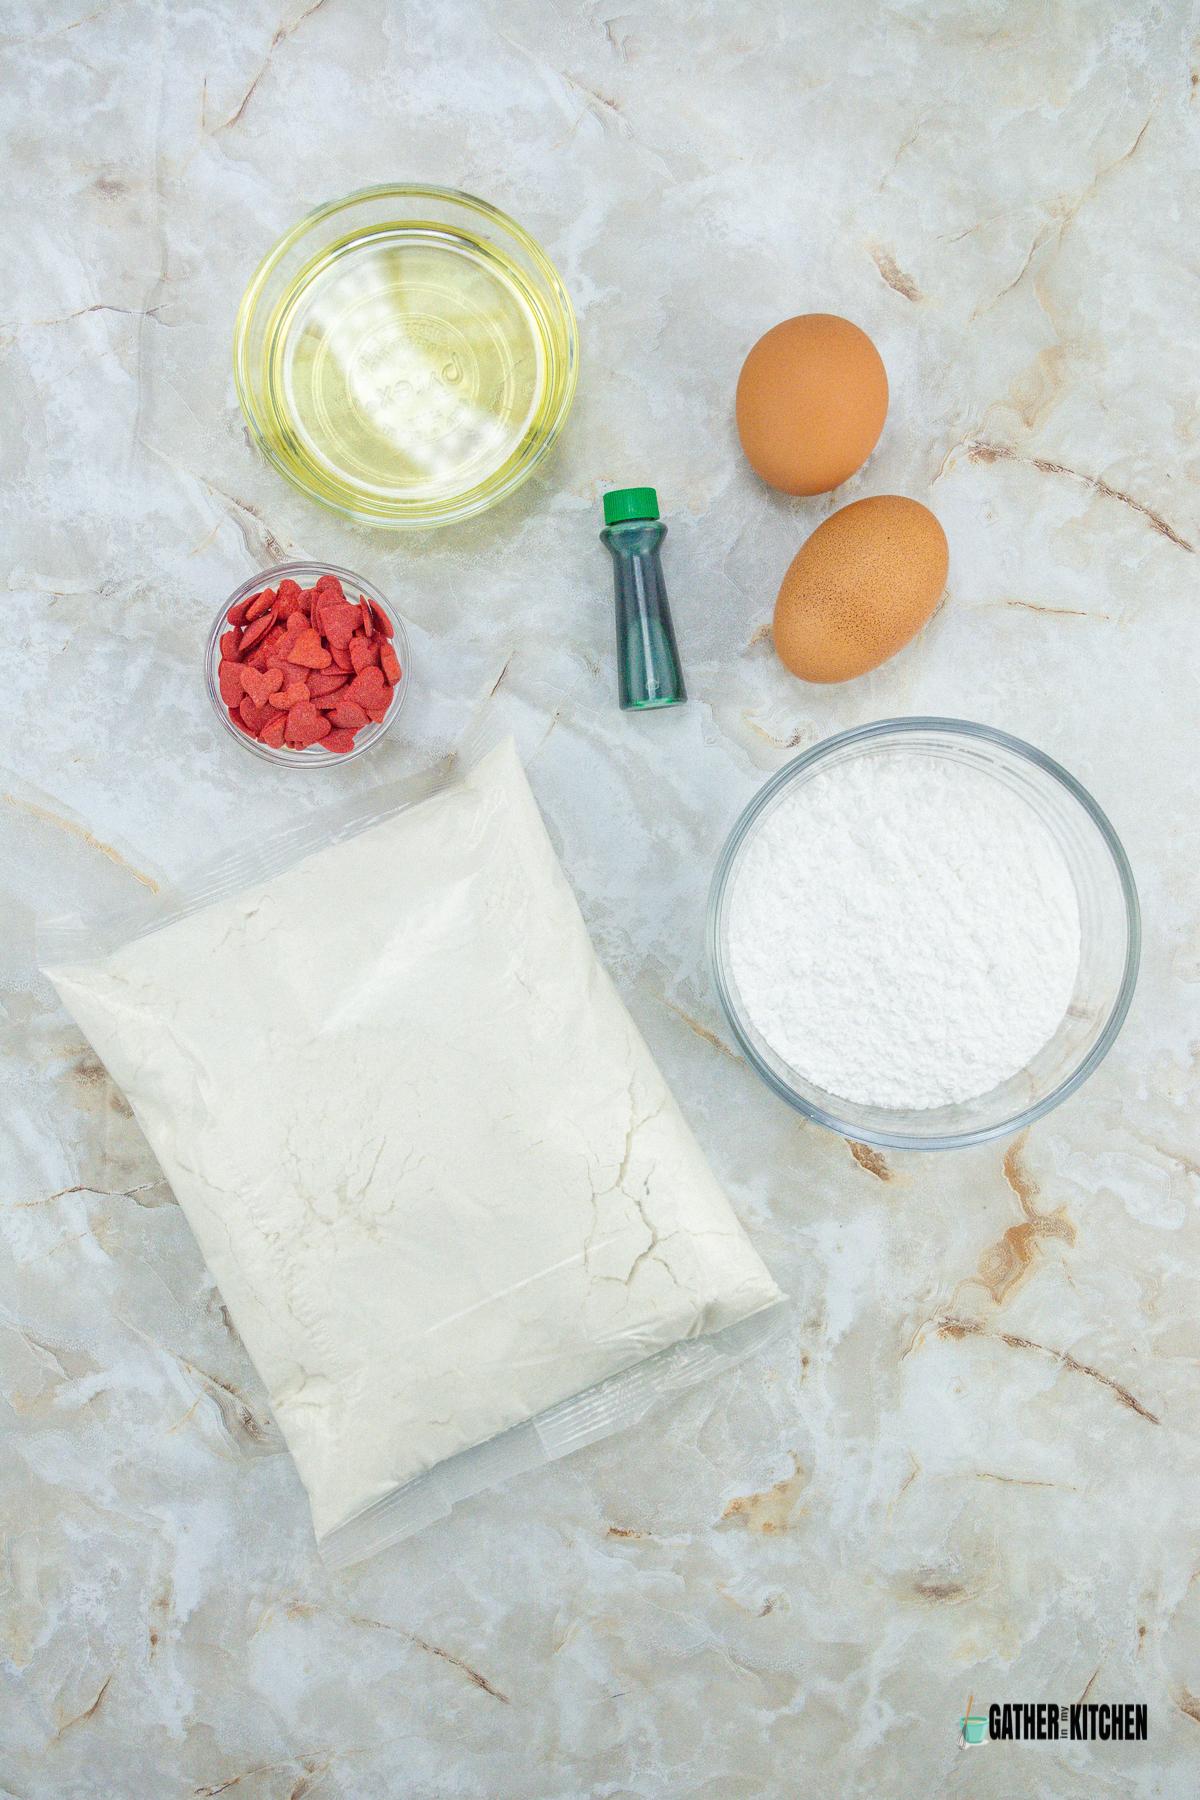 ingredients: eggs, sugar, cake mix, oil, food coloring, sprinkles